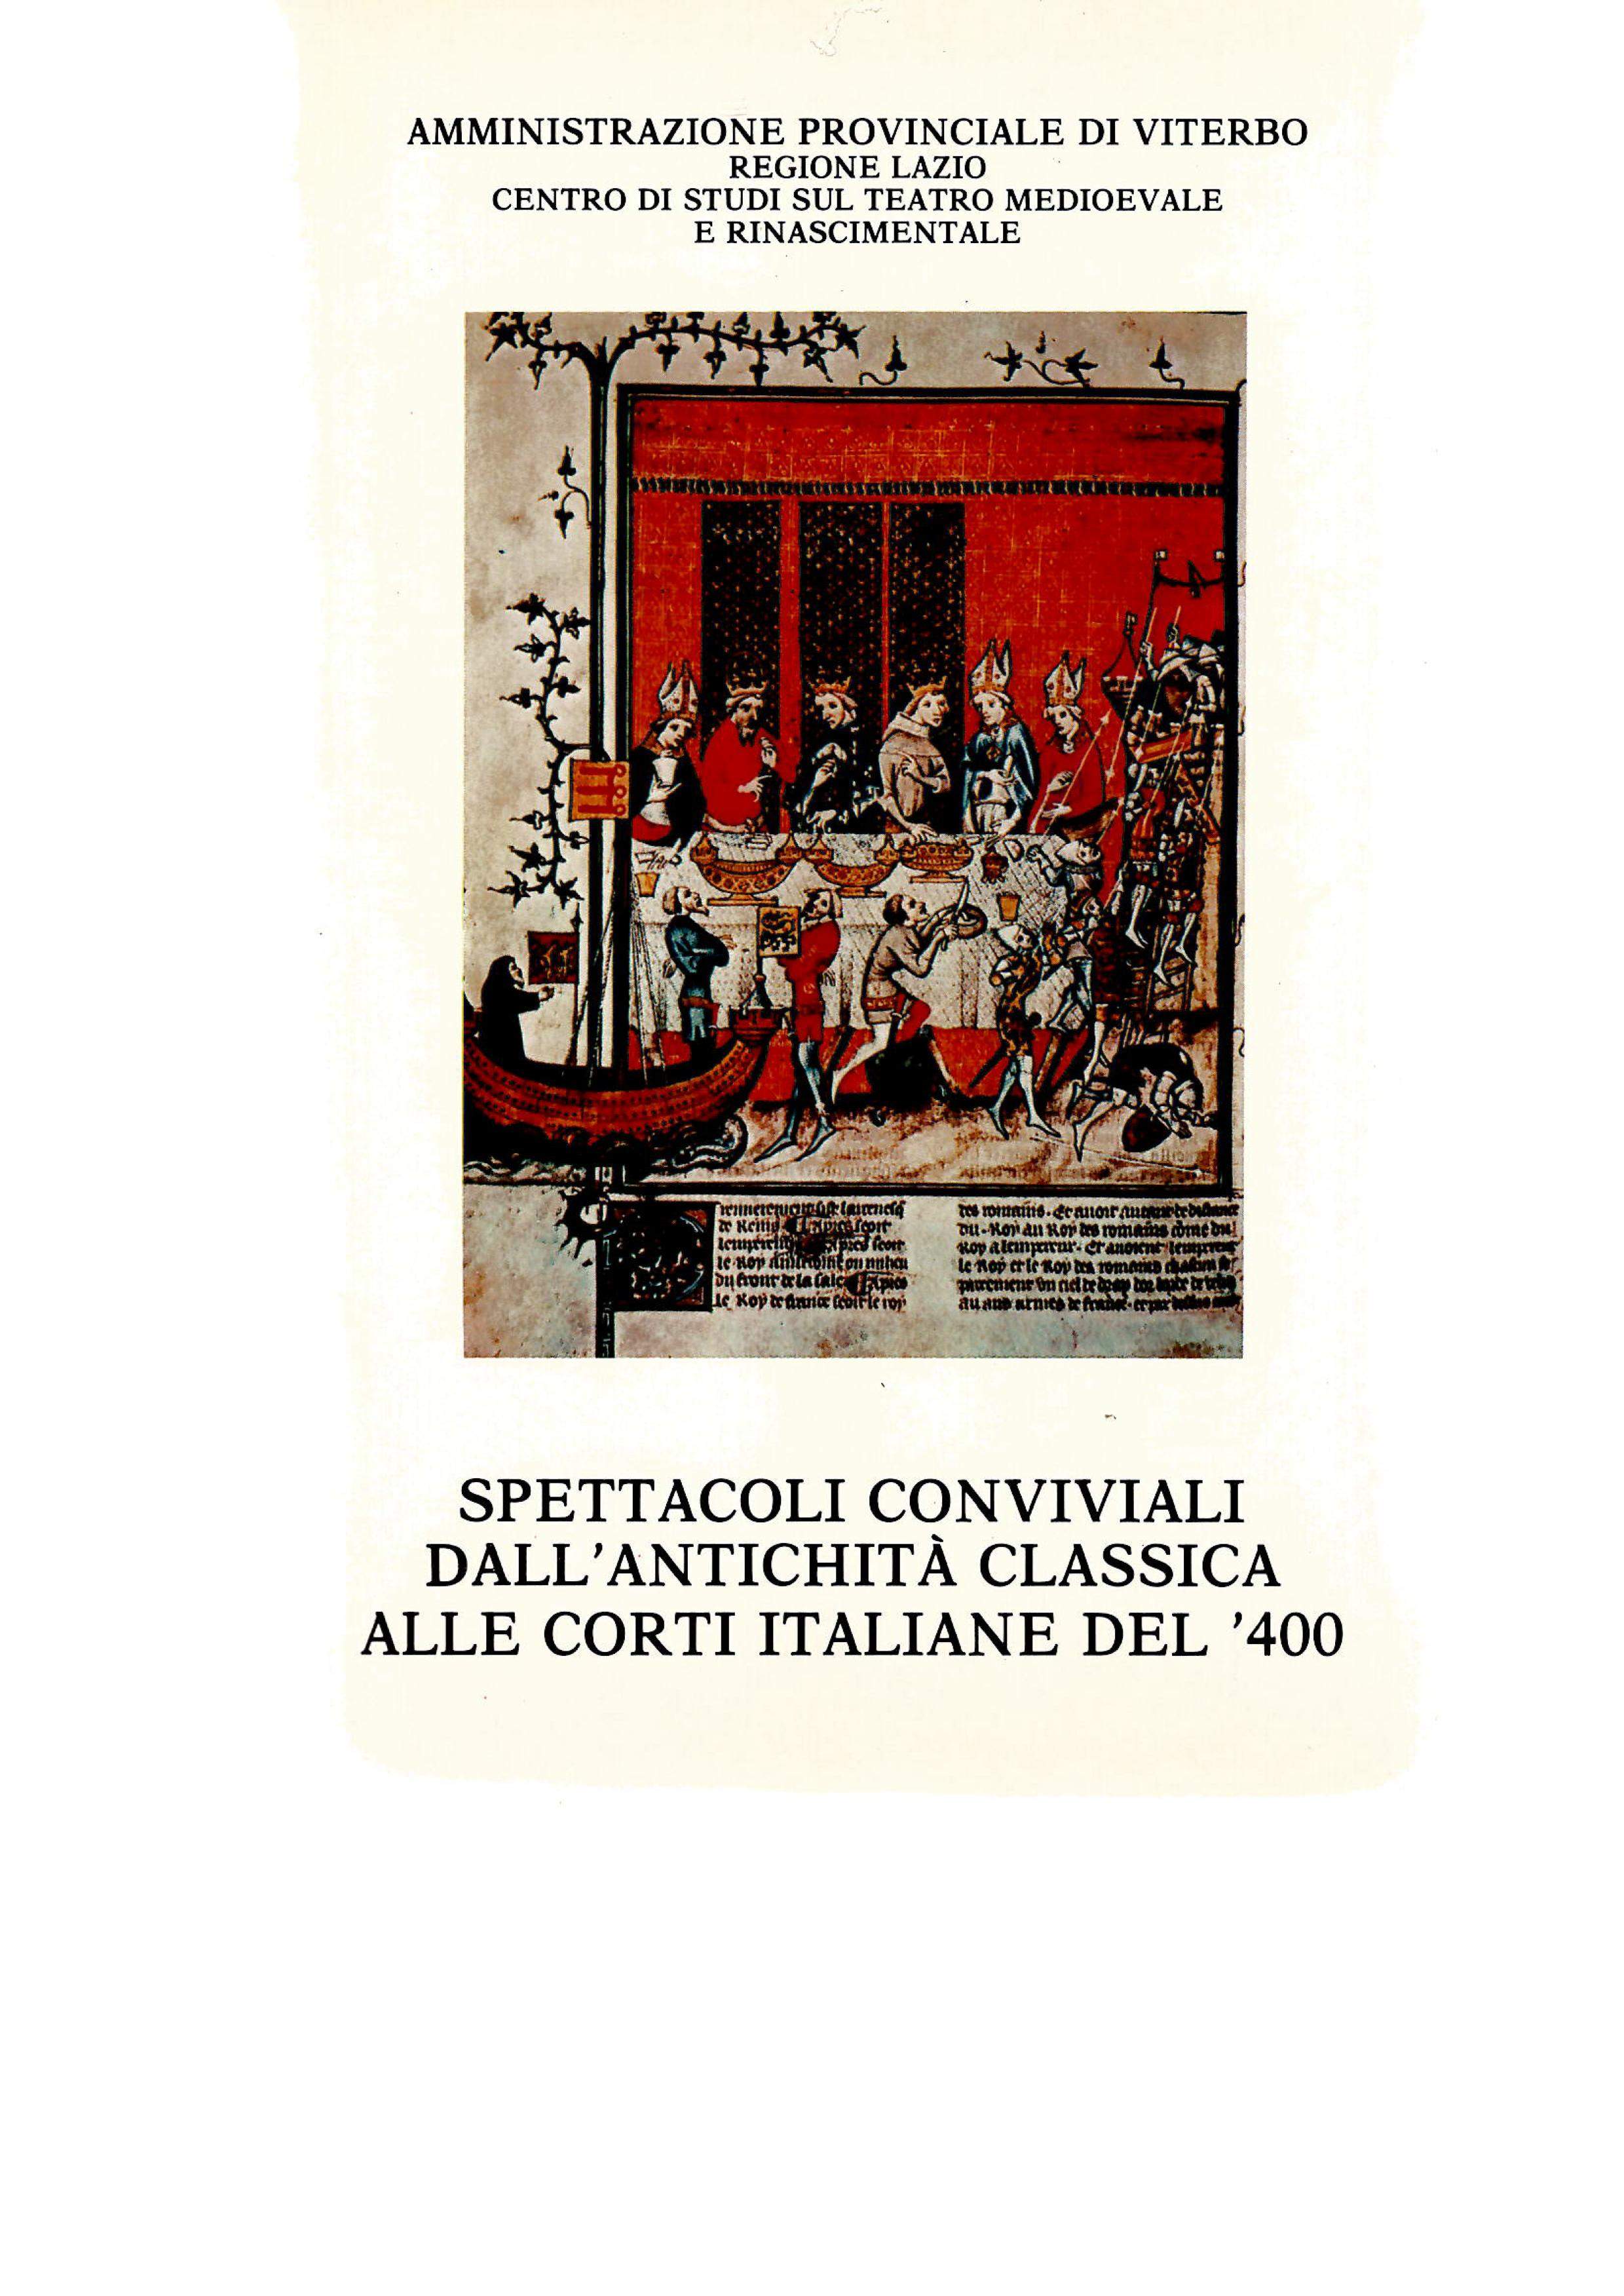 Spettacoli conviviali dall'antichità classica alle corti italiane del '400